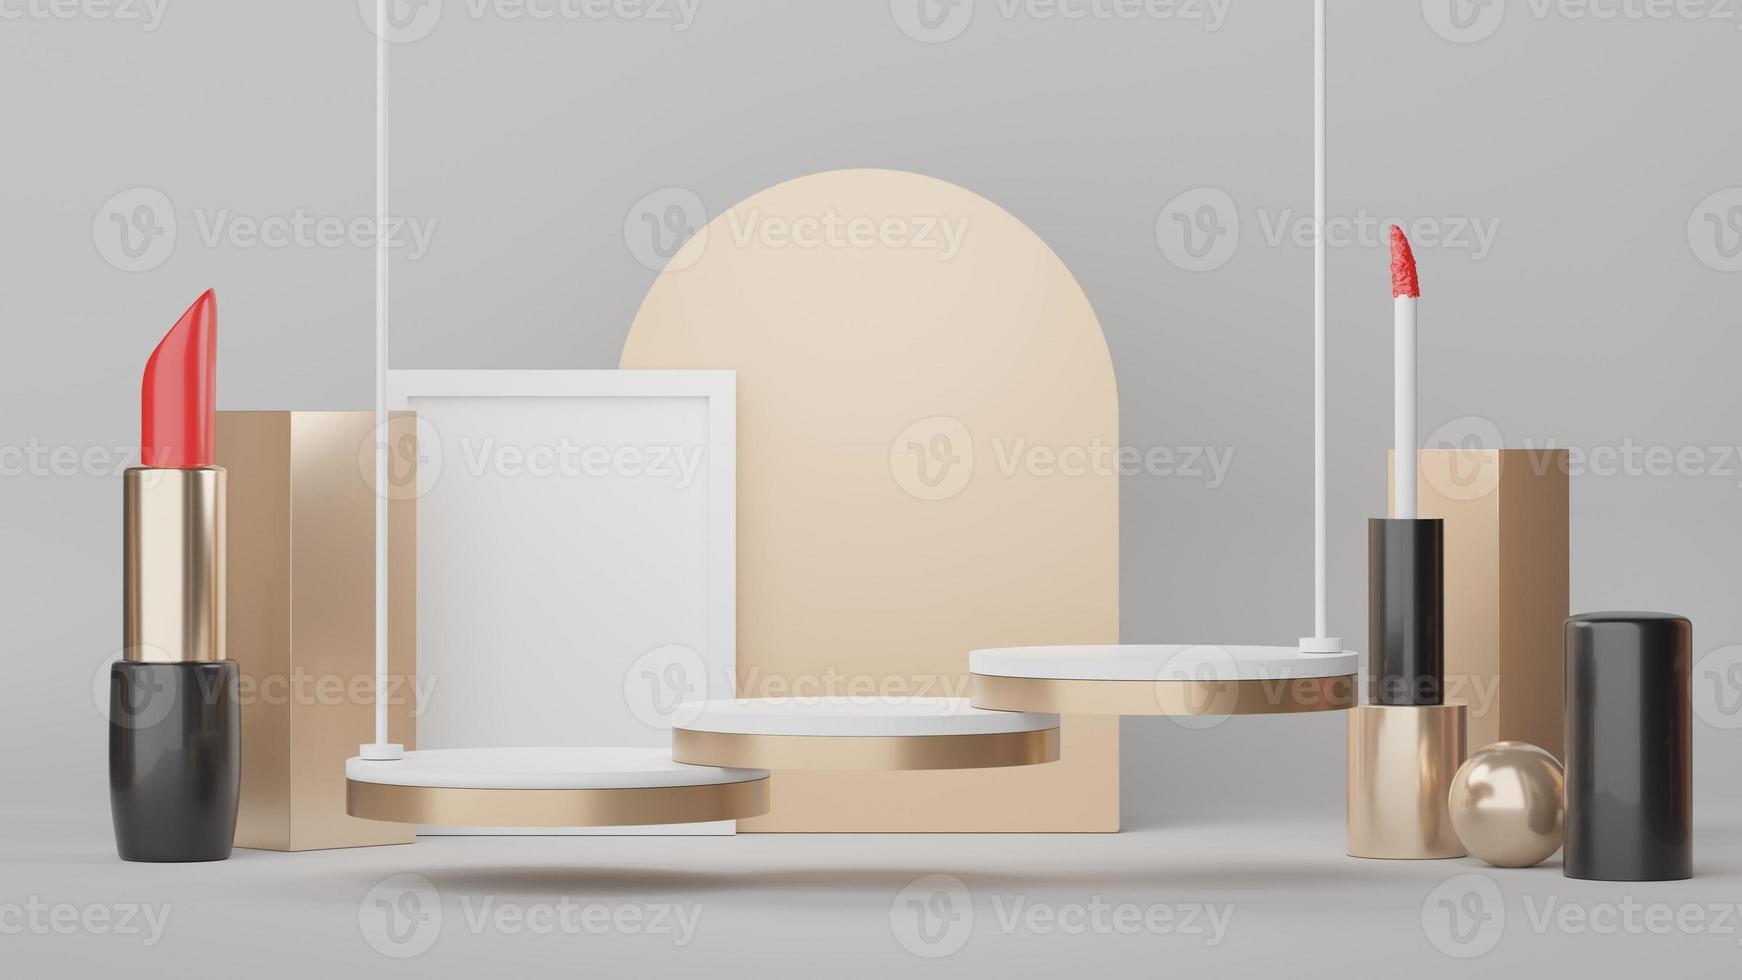 3D-Display-Podium für Produkt- und Kosmetikpräsentation mit Lippenstift und moderner Geometrie. Plattform zum Mock-up und Anzeigen der Marke. Minimal sauberes Design. foto